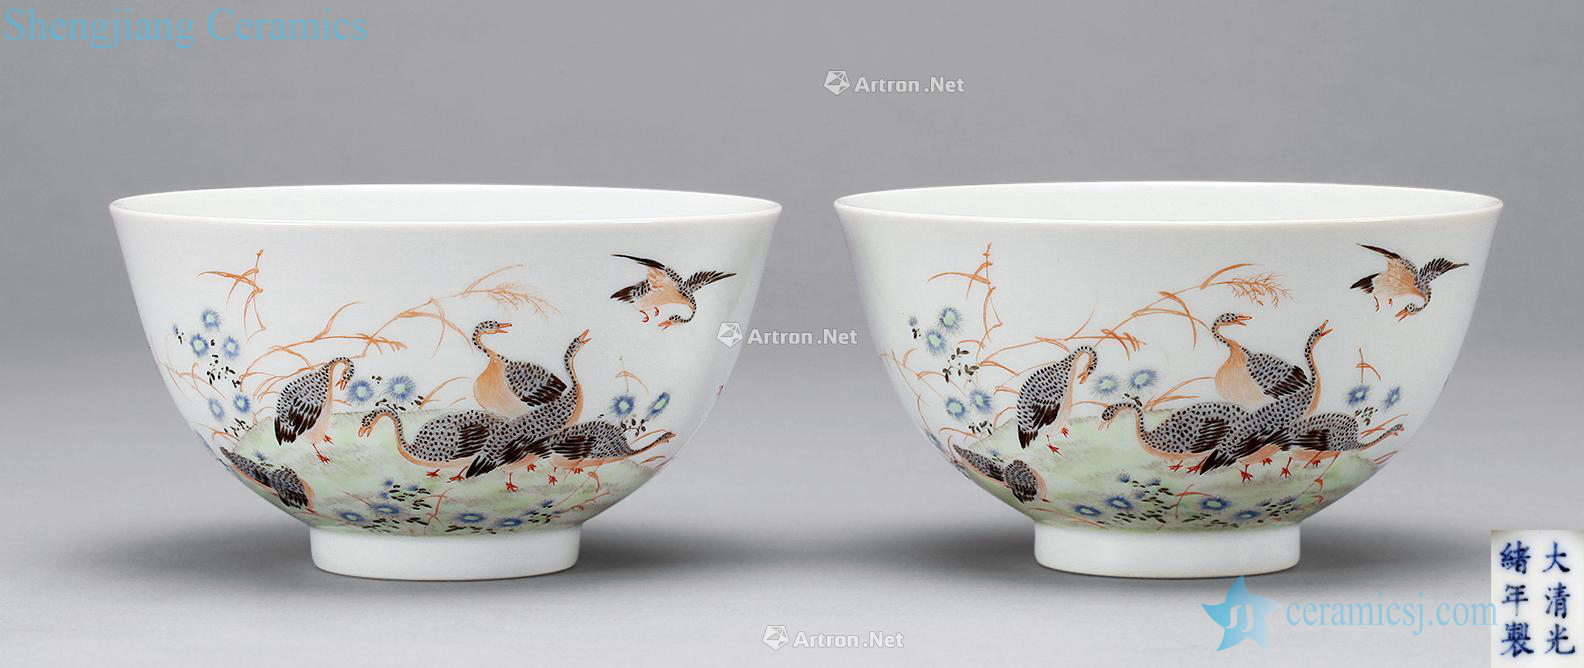 Pastel reign of qing emperor guangxu LuYan figure bowl (2)